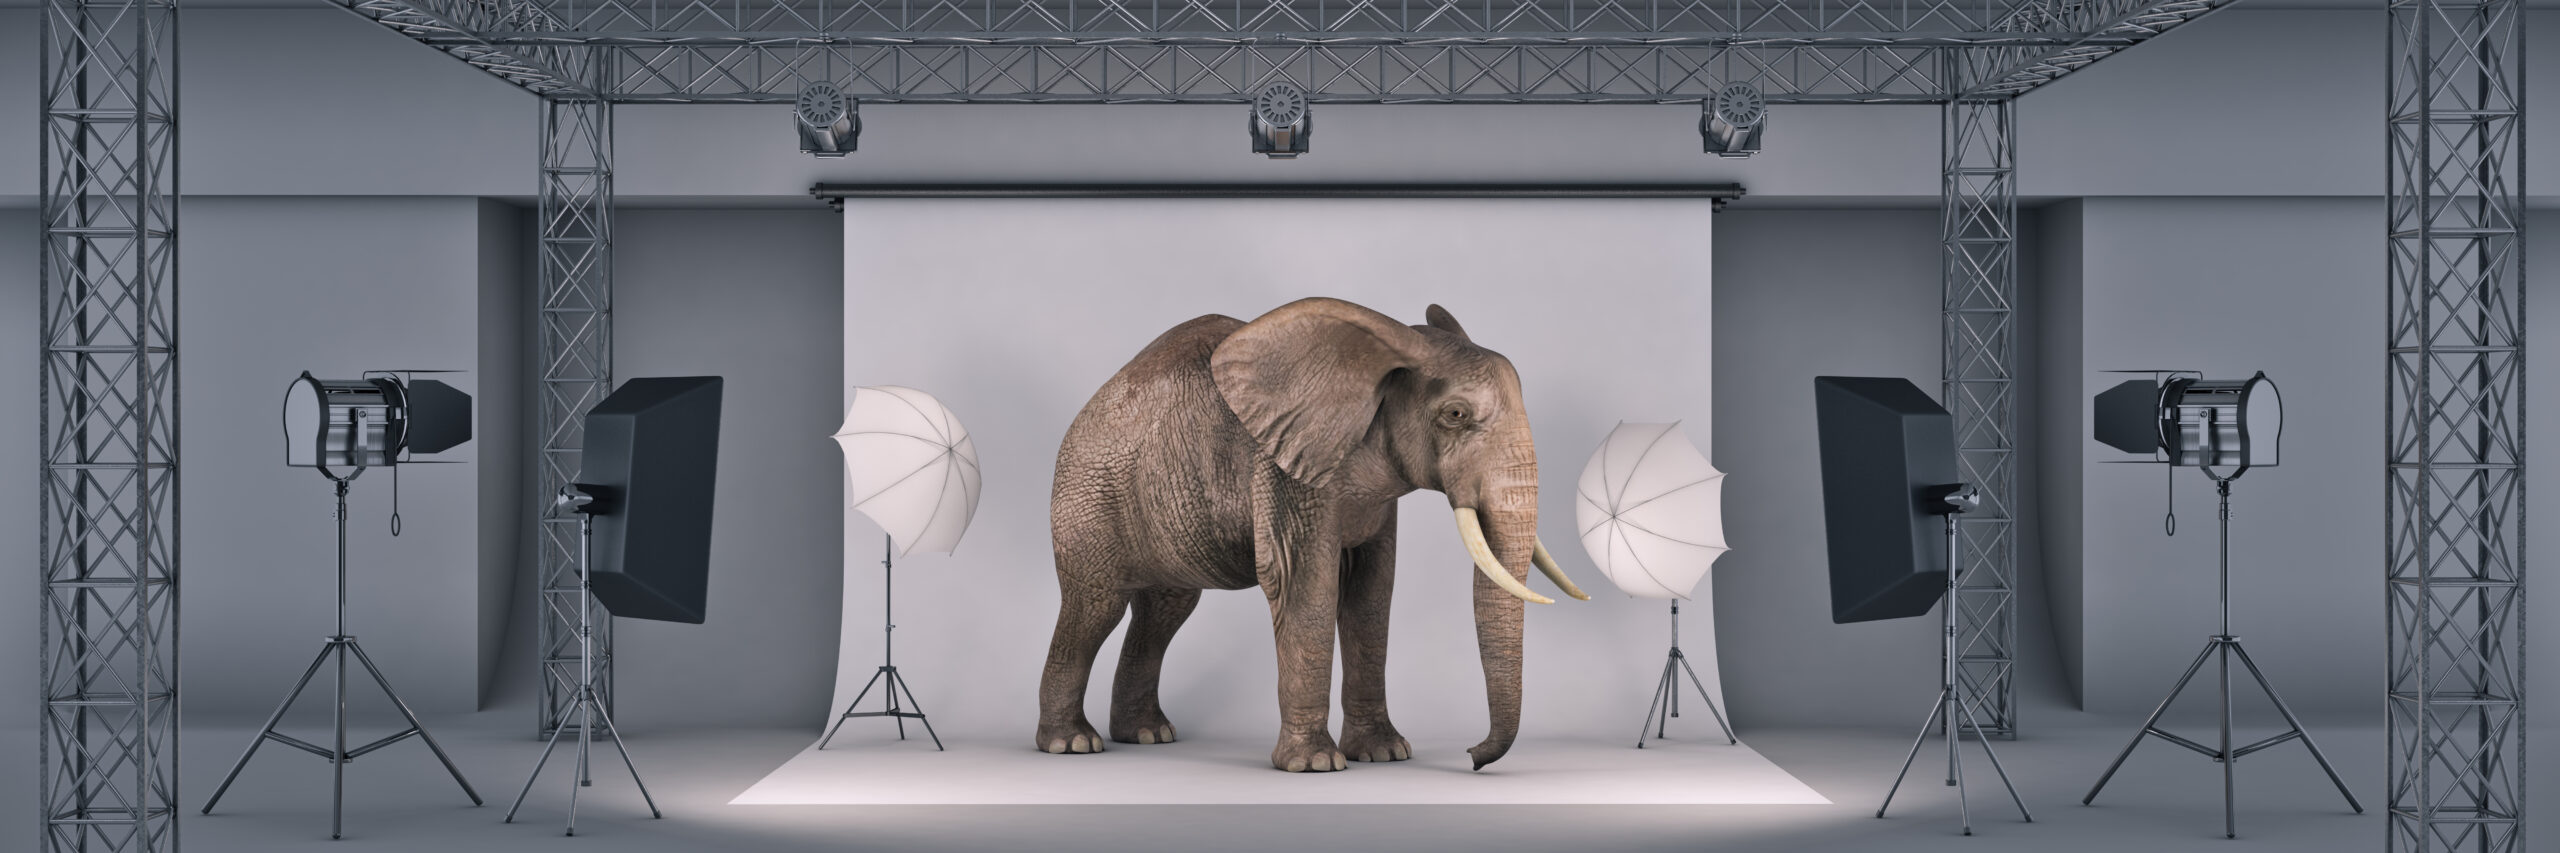 photo-studio-with-elephant-3d-rendering